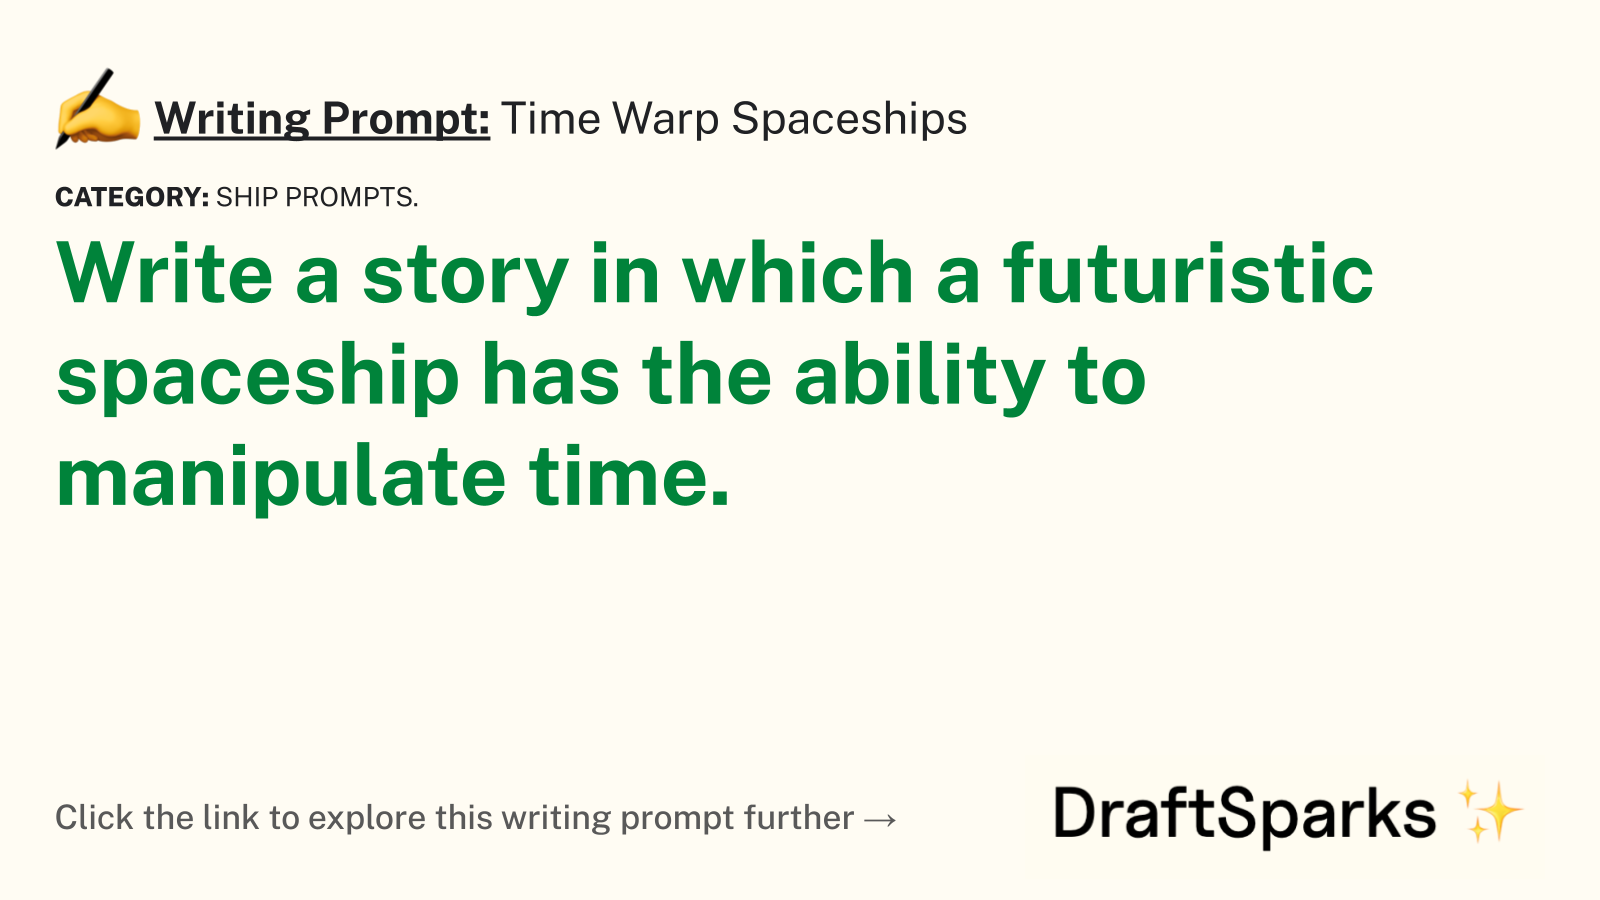 Time Warp Spaceships